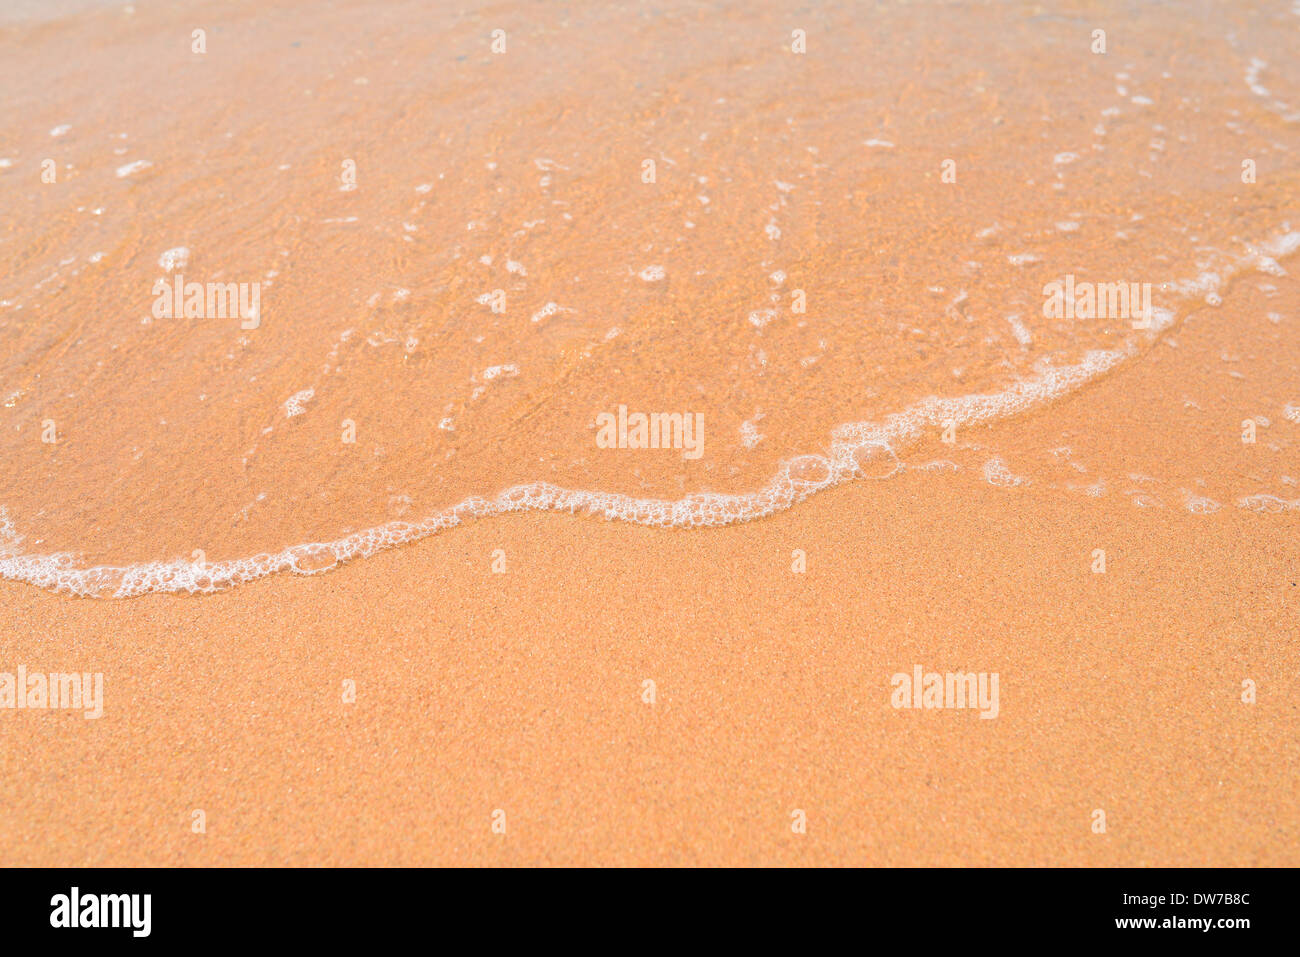 wave on a sandy beach Stock Photo